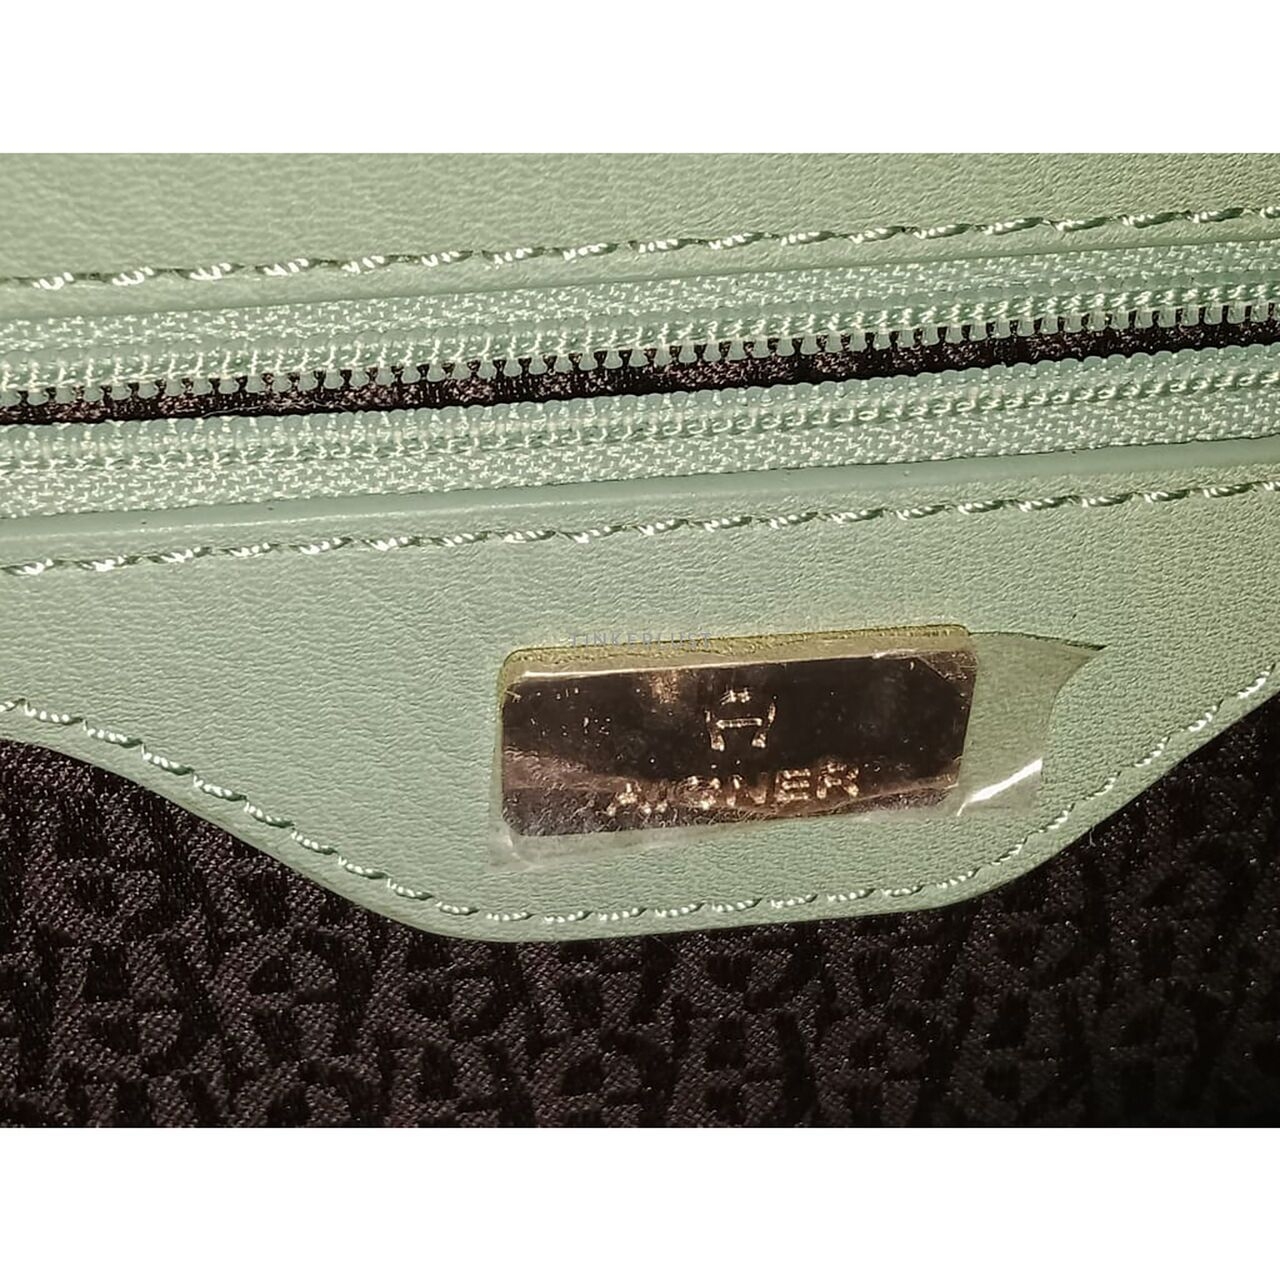 Aigner Tosca Green Leather Shoulder Bag